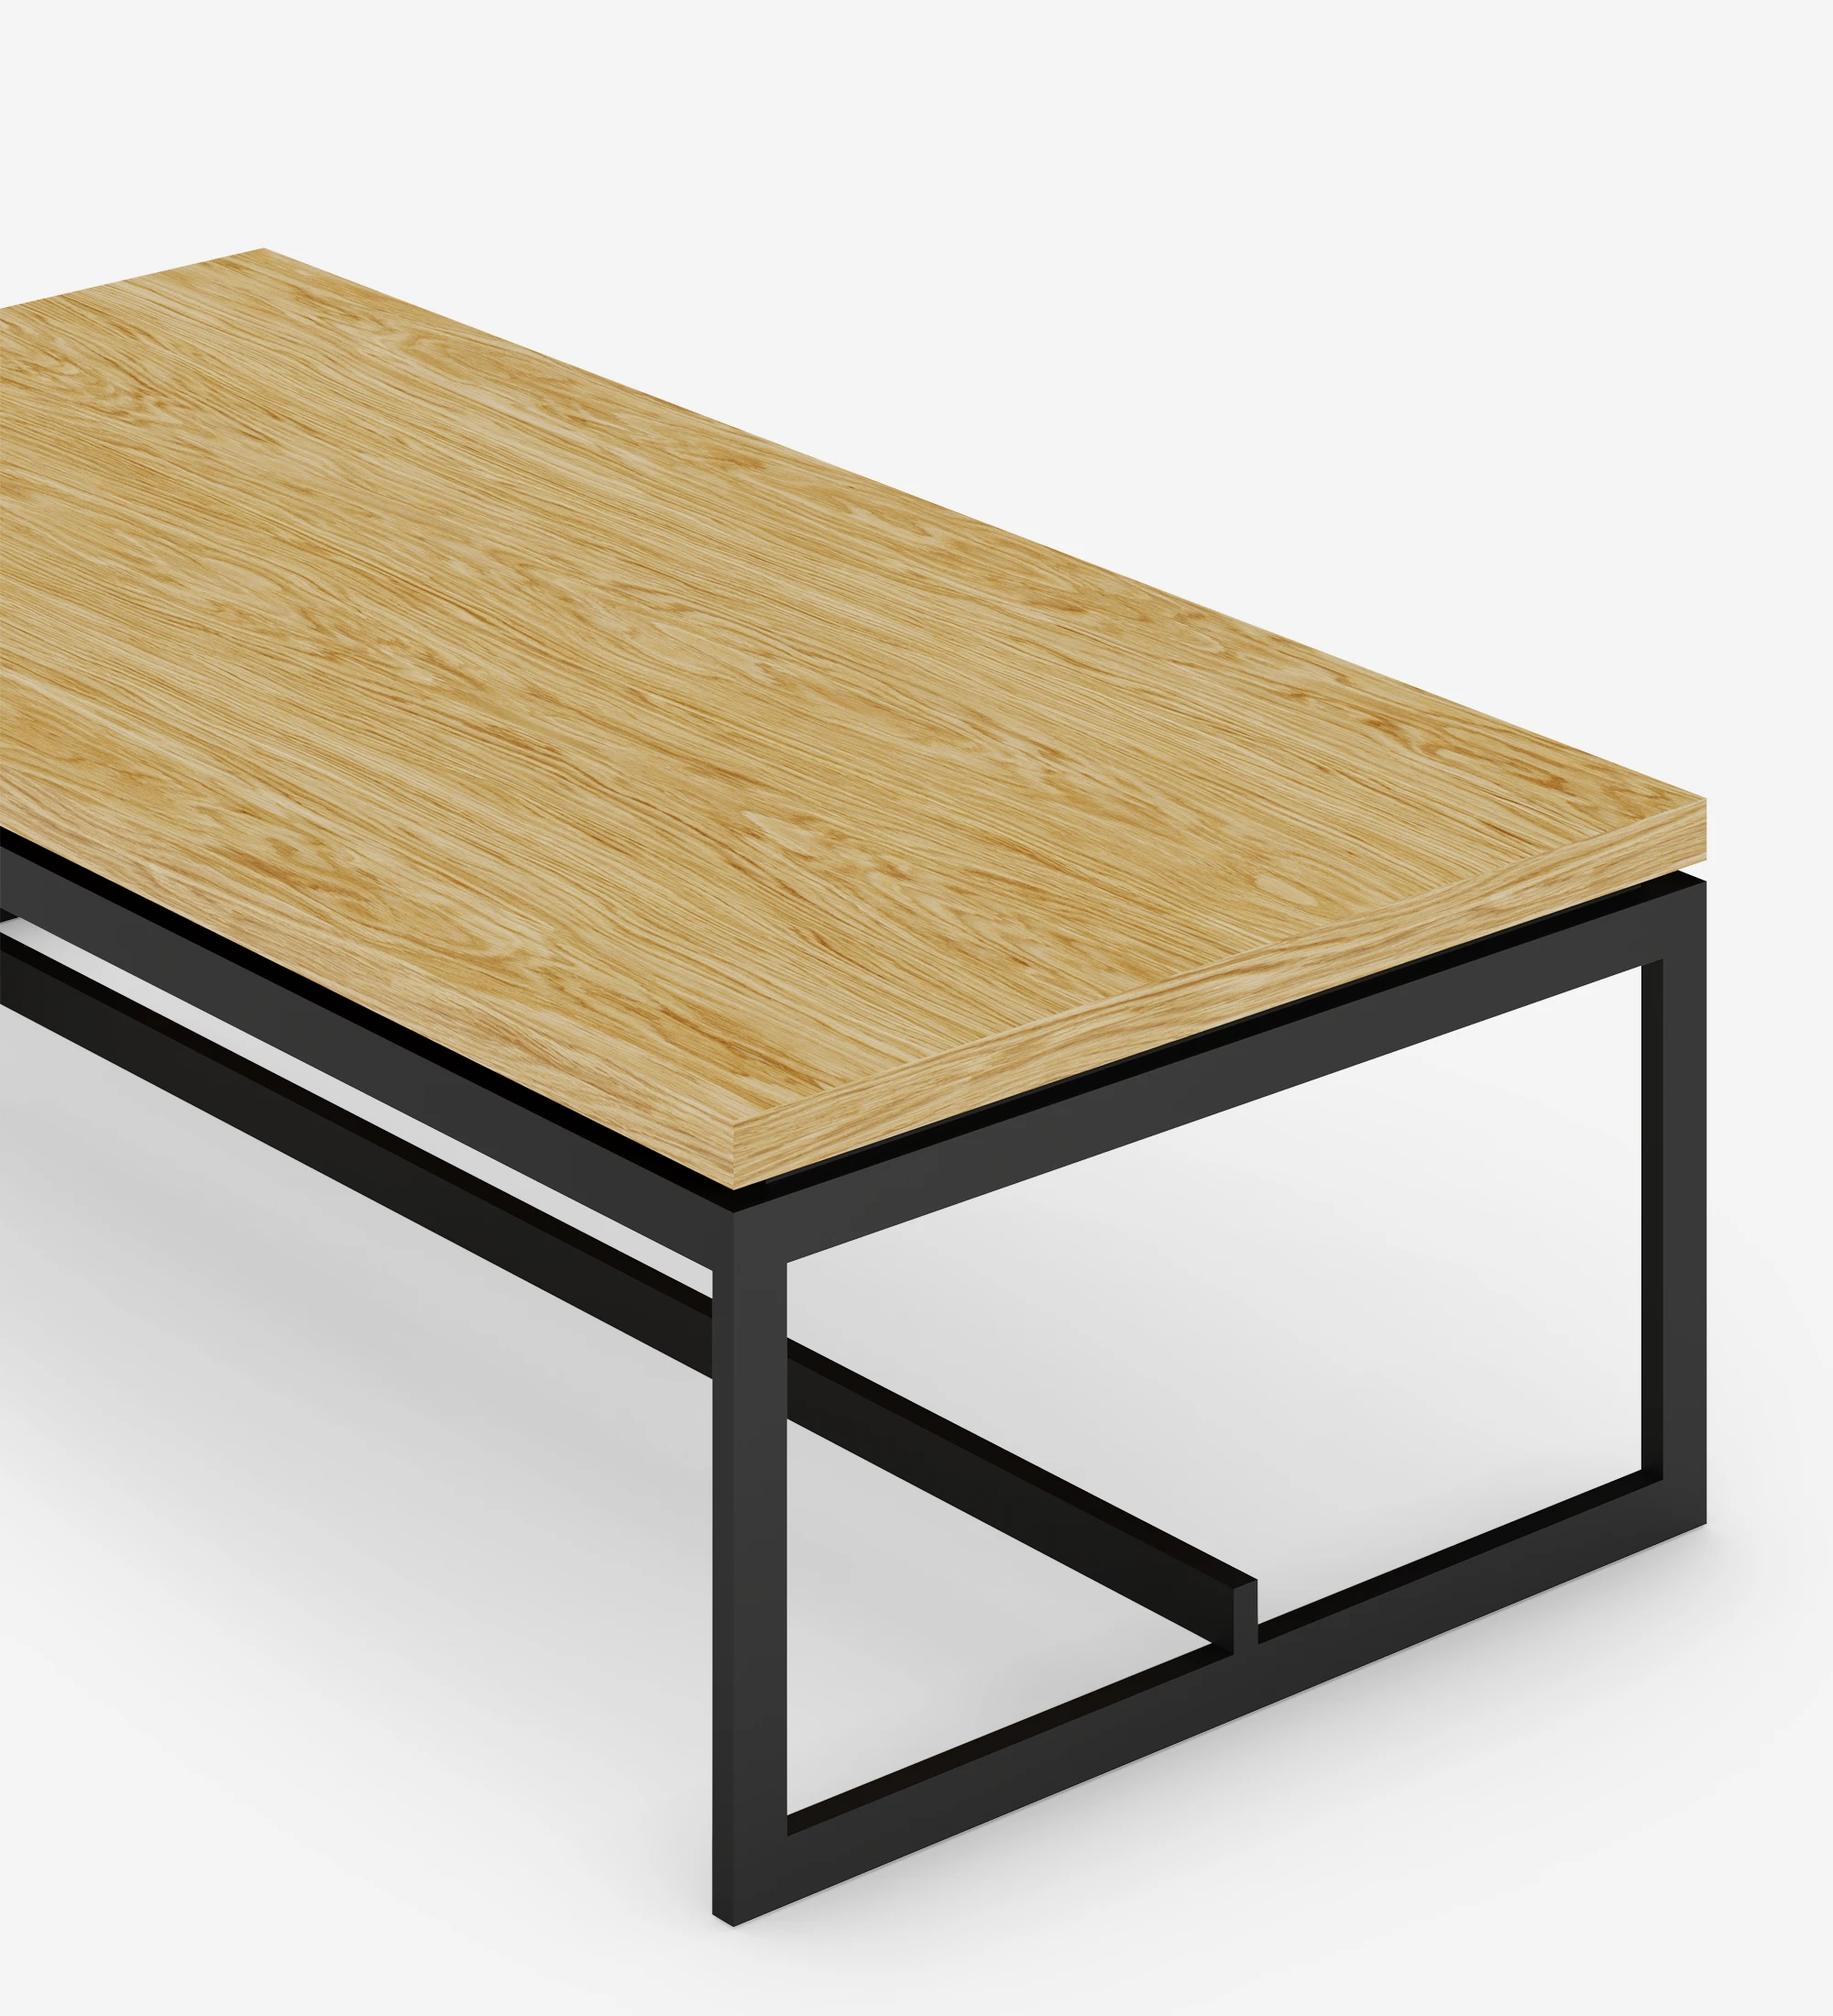 Table basse Chicago rectangulaire, plateau en chêne naturel, pieds en métal laqué noir, 120 x 60 cm.